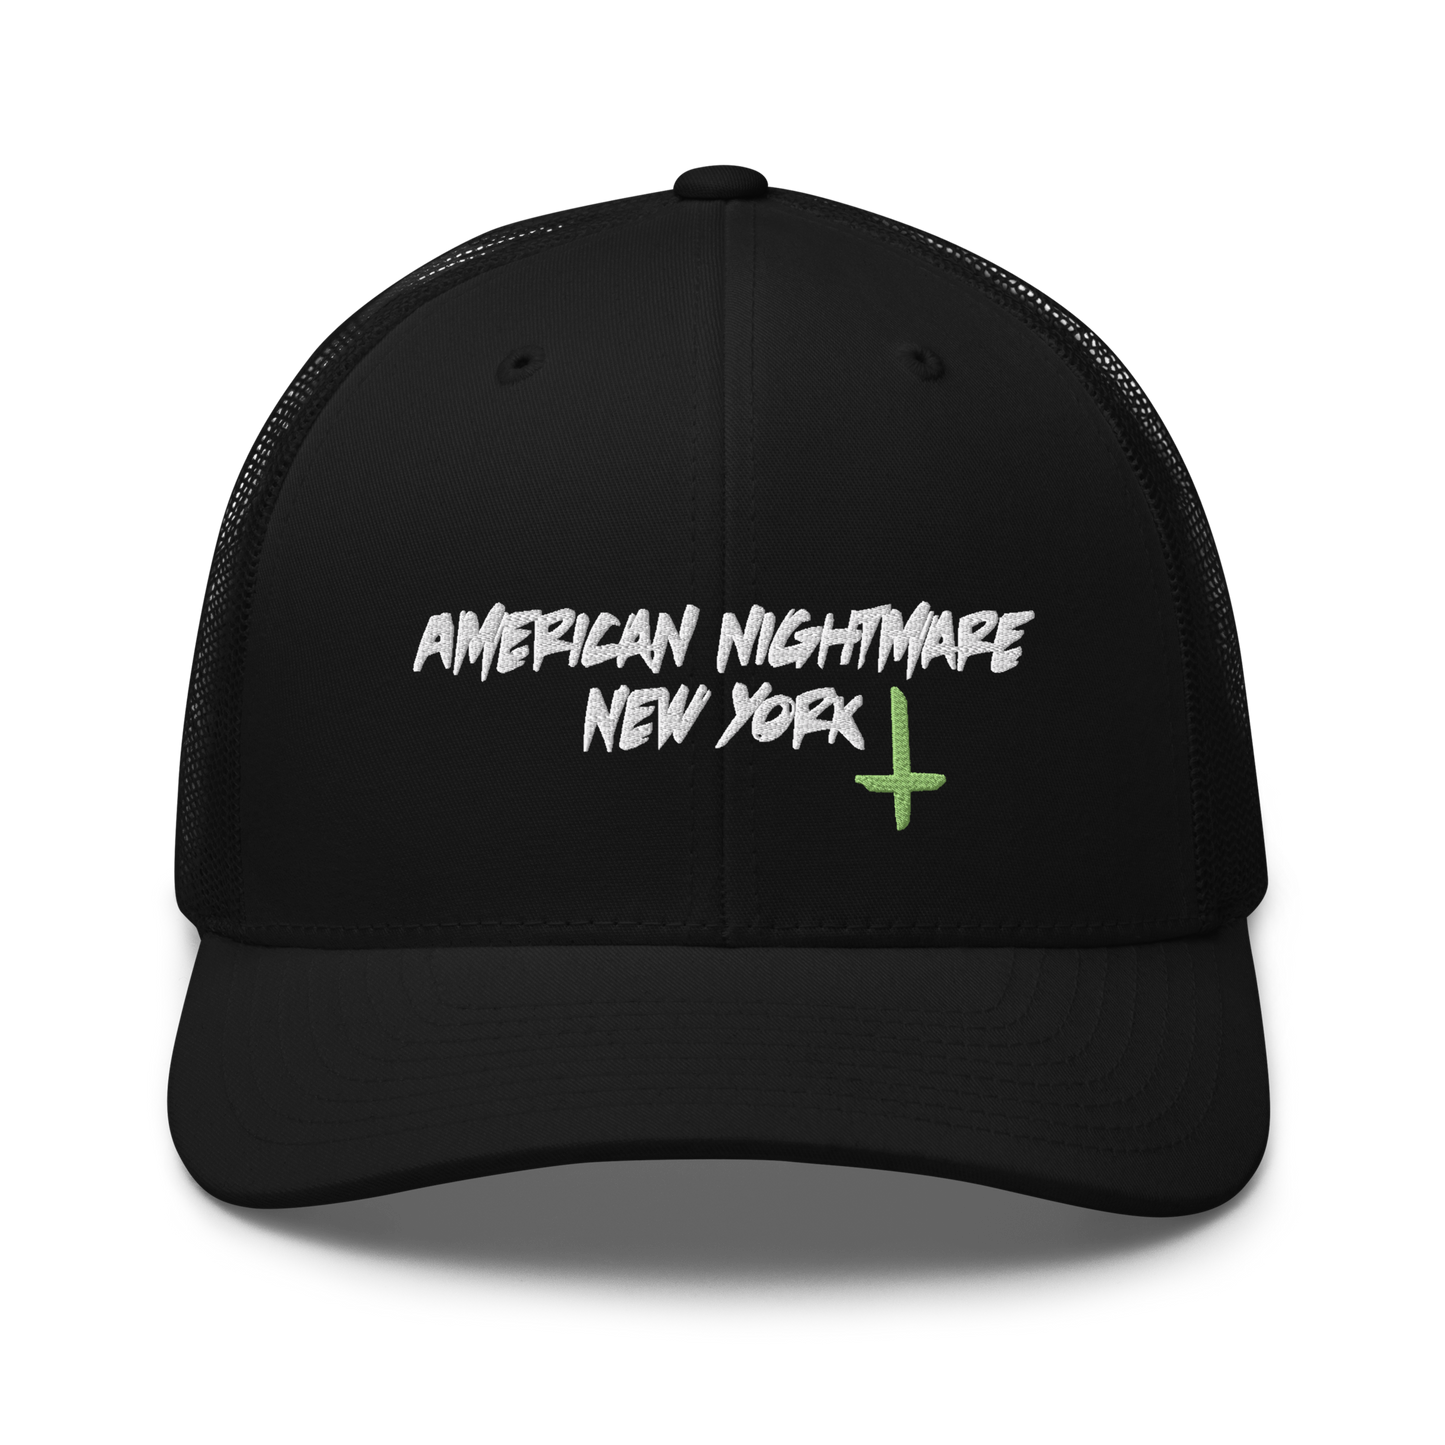 ANA NY trucker hat